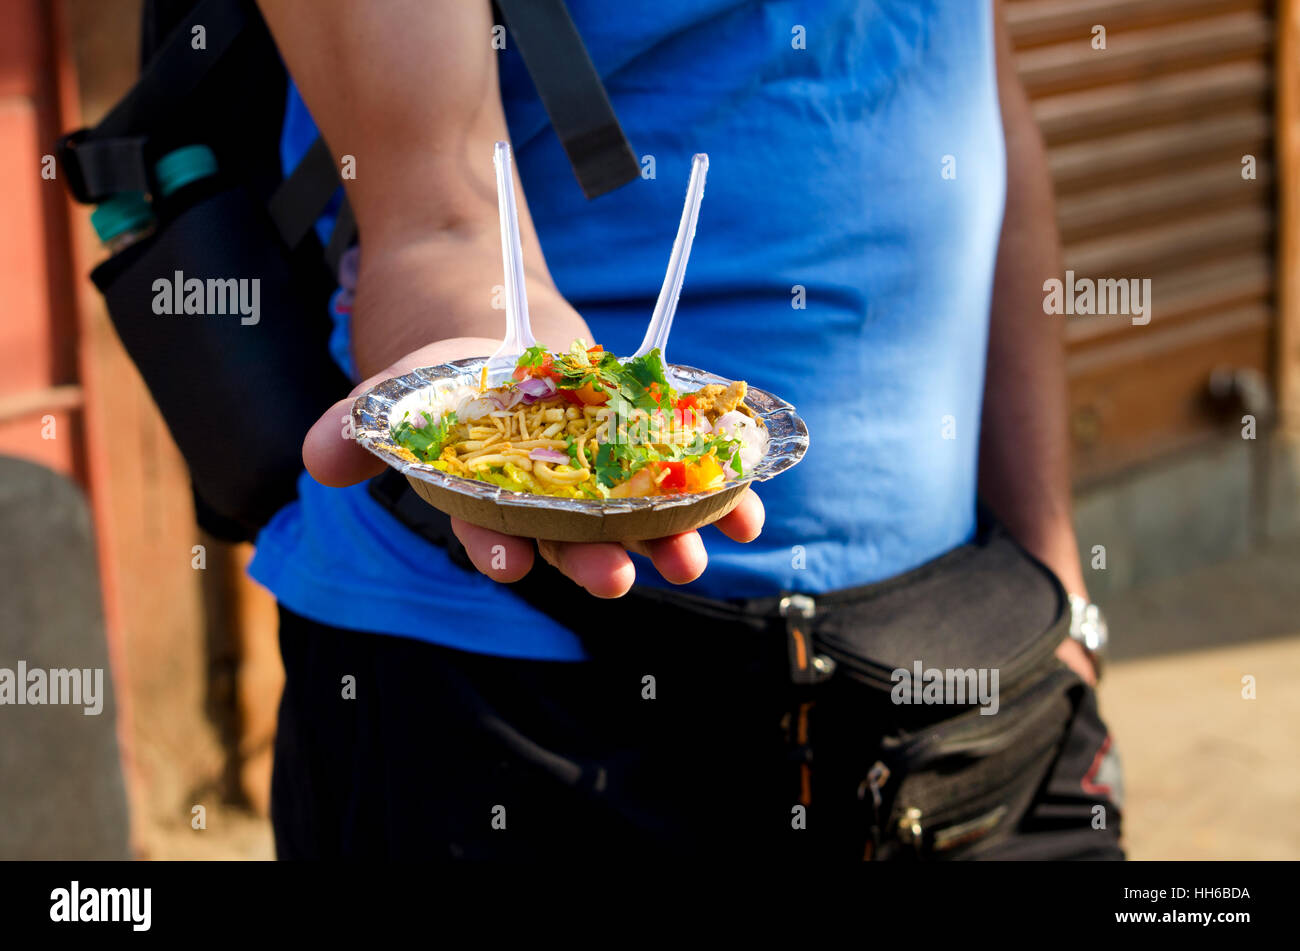 El hombre tiene en la mano un plato con comida india de la calle, el hombre,tiene,una placa,street,la comida,en una mano,ofertas,muestra,nacional Foto de stock